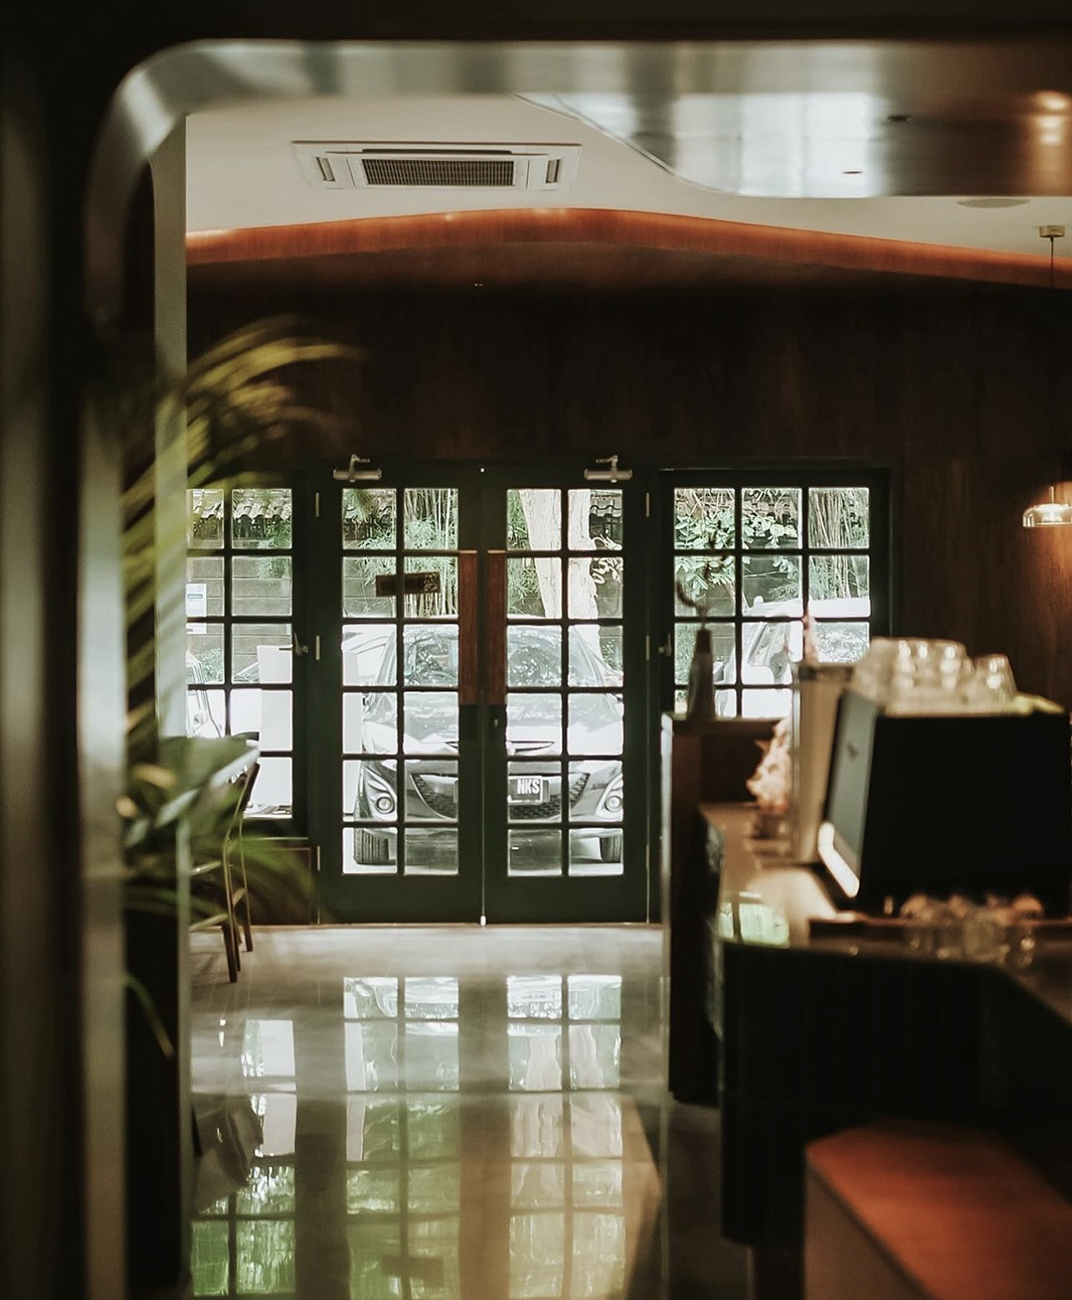 美学咖啡店secondfloorcoffee 巴厘岛 深圳 上海 北京 广州 武汉 咖啡店 餐饮商业 logo设计 vi设计 空间设计